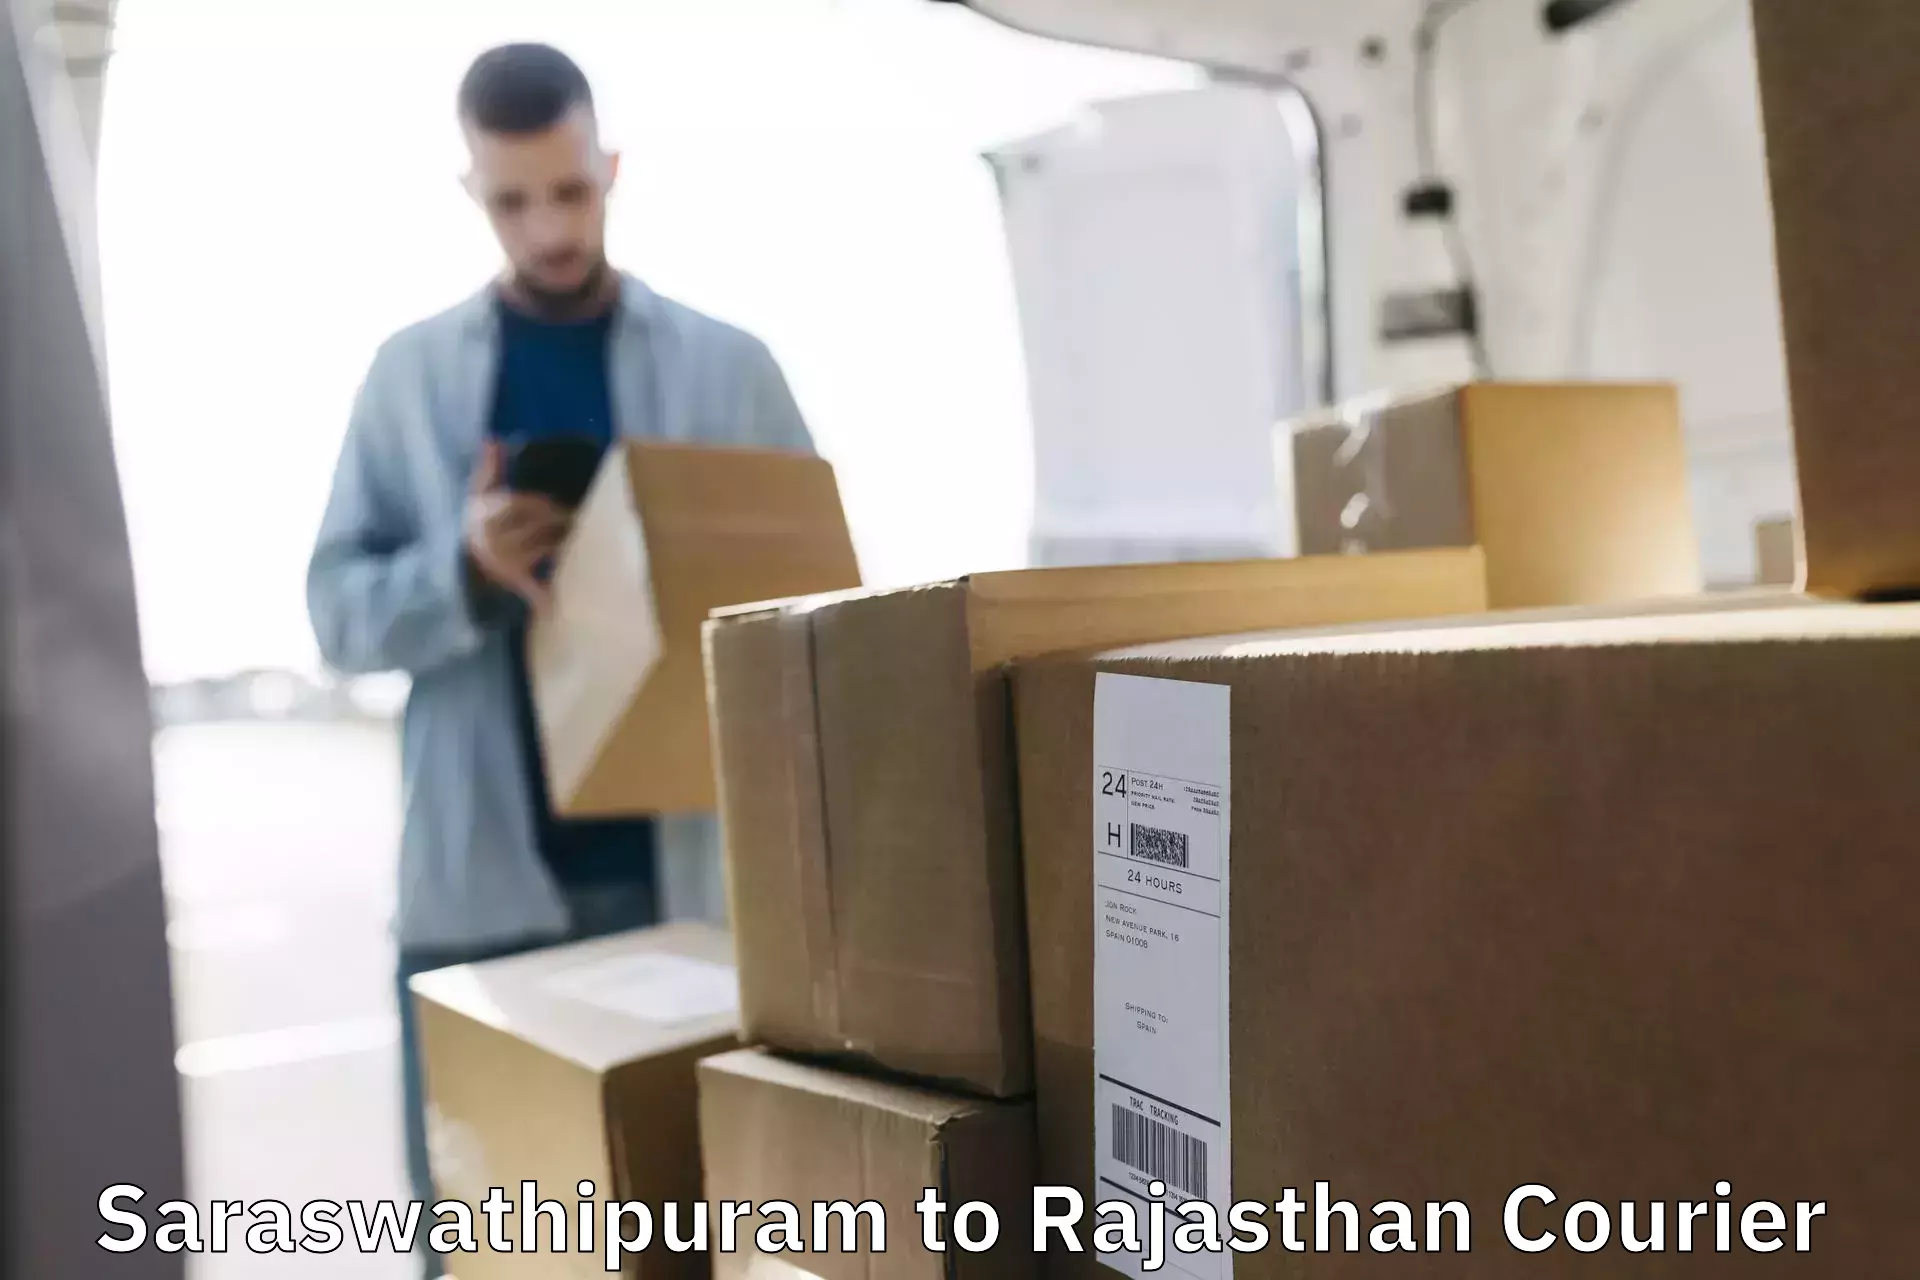 Optimized delivery routes Saraswathipuram to Tibbi